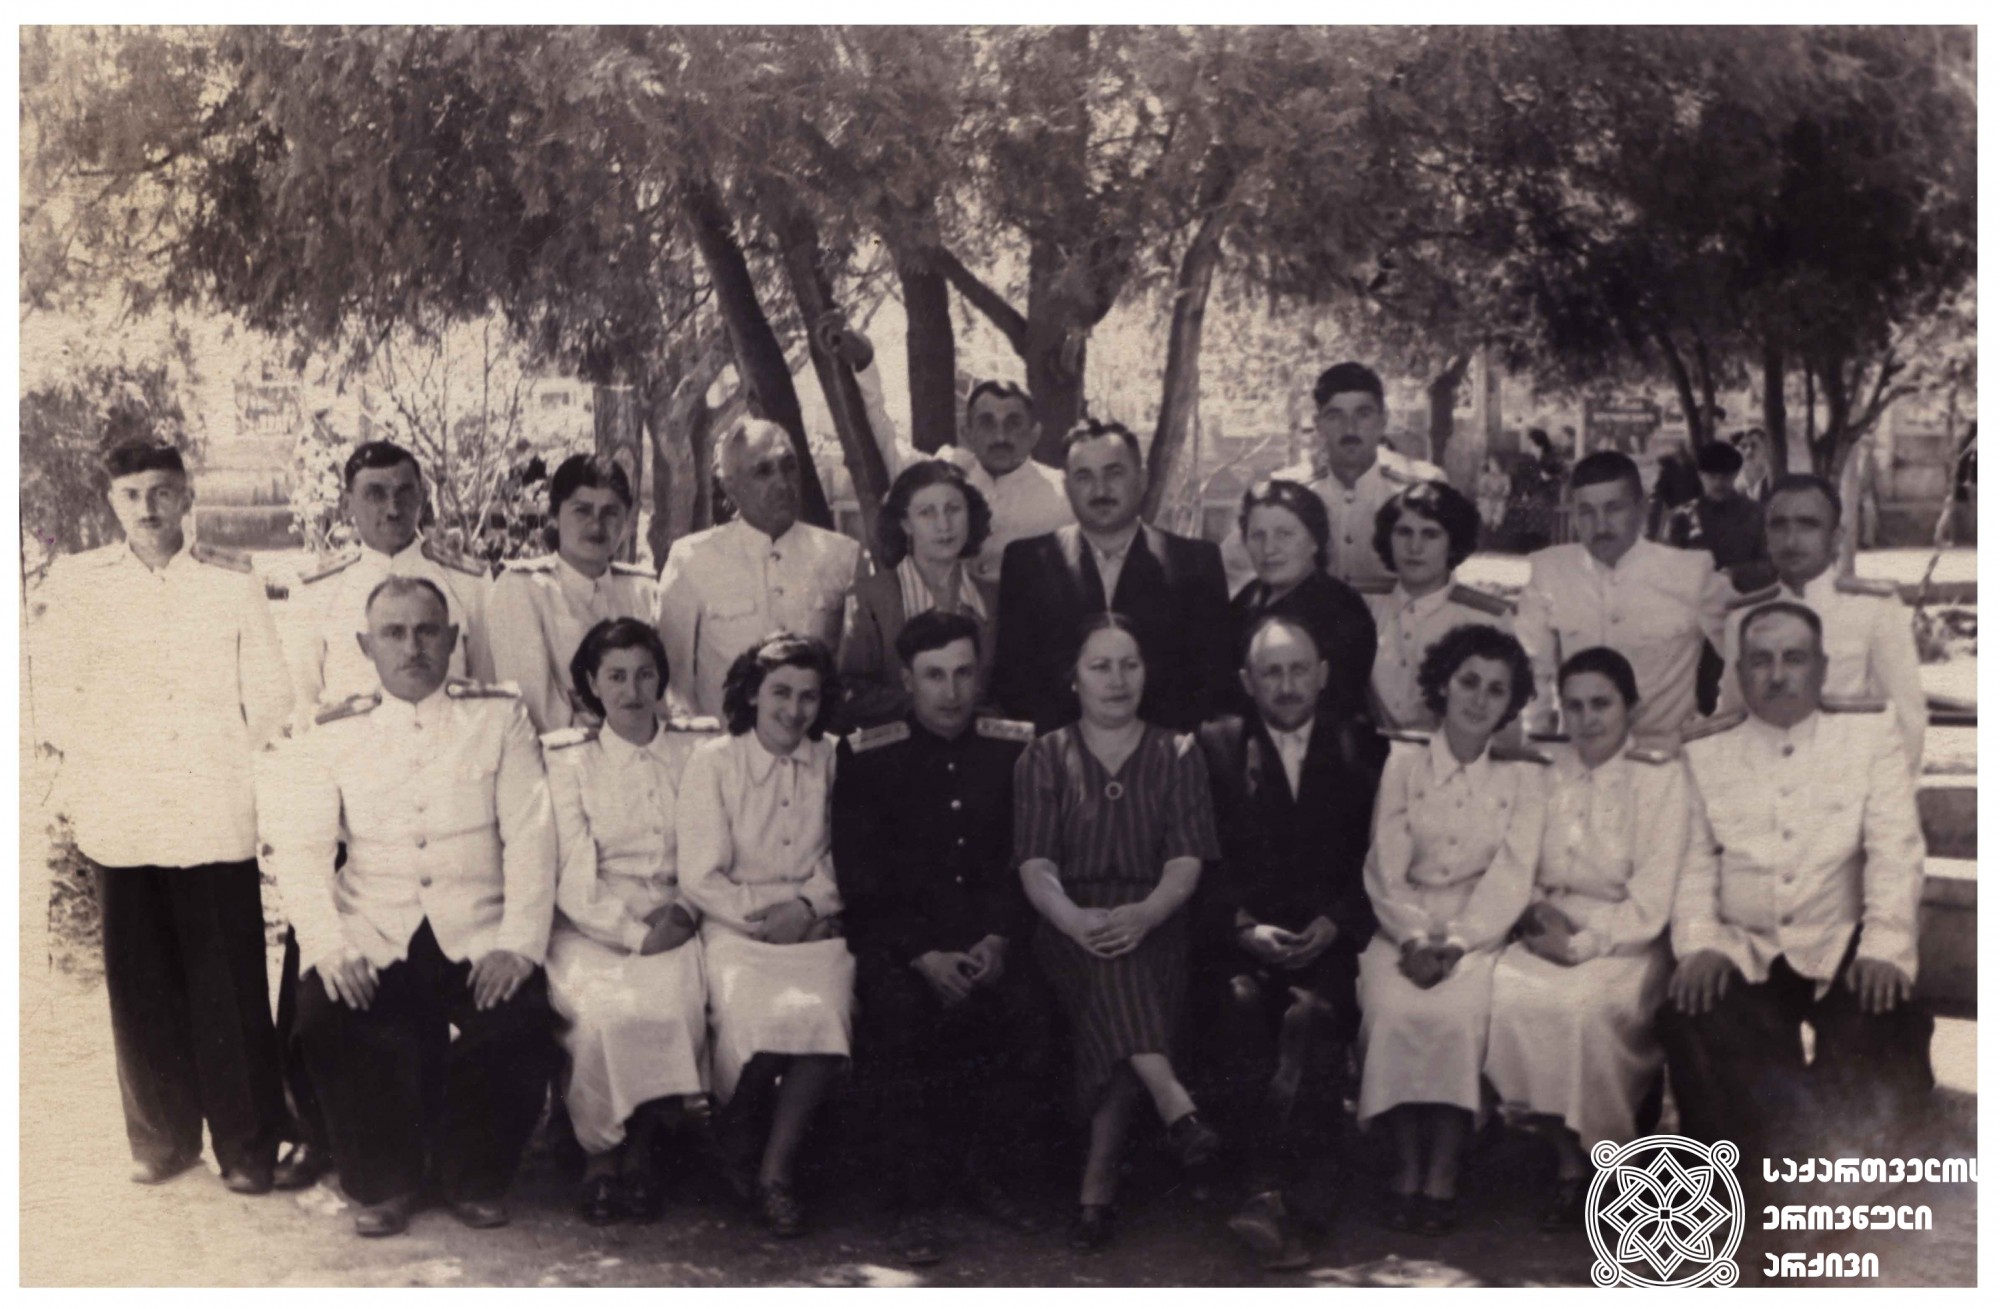 მარო თარხნიშვილი გორის რკინიგზის კლუბის ანსამბლის წევრებთან ერთად. <br>
1954 წელი, გორი.